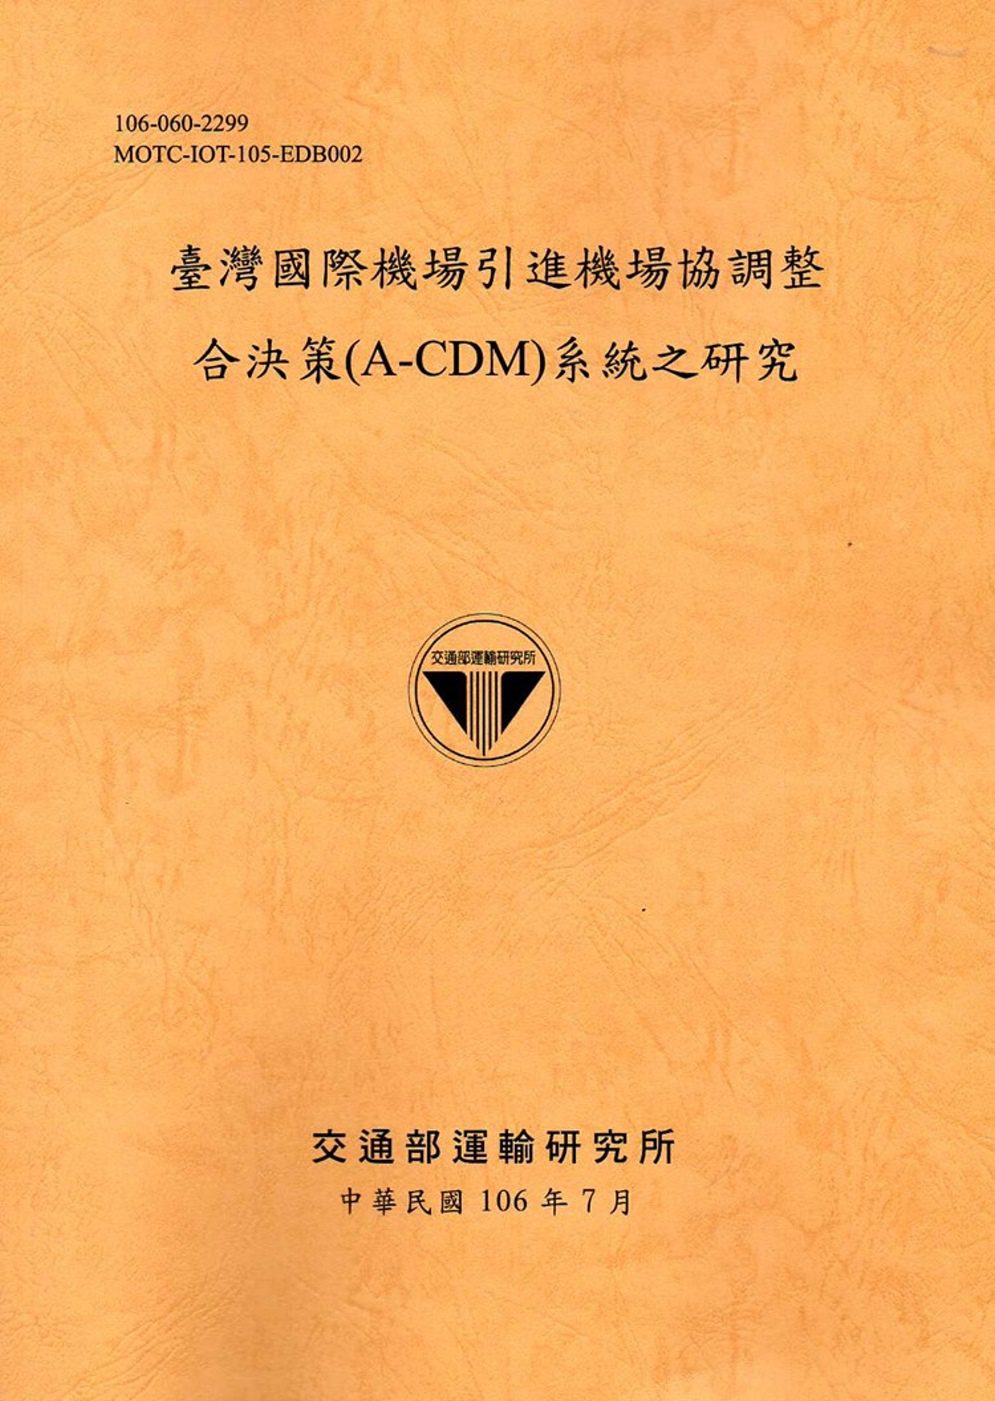 臺灣國際機場引進機場協調整合決策(A-CDM)系統之研究[106銘黃]